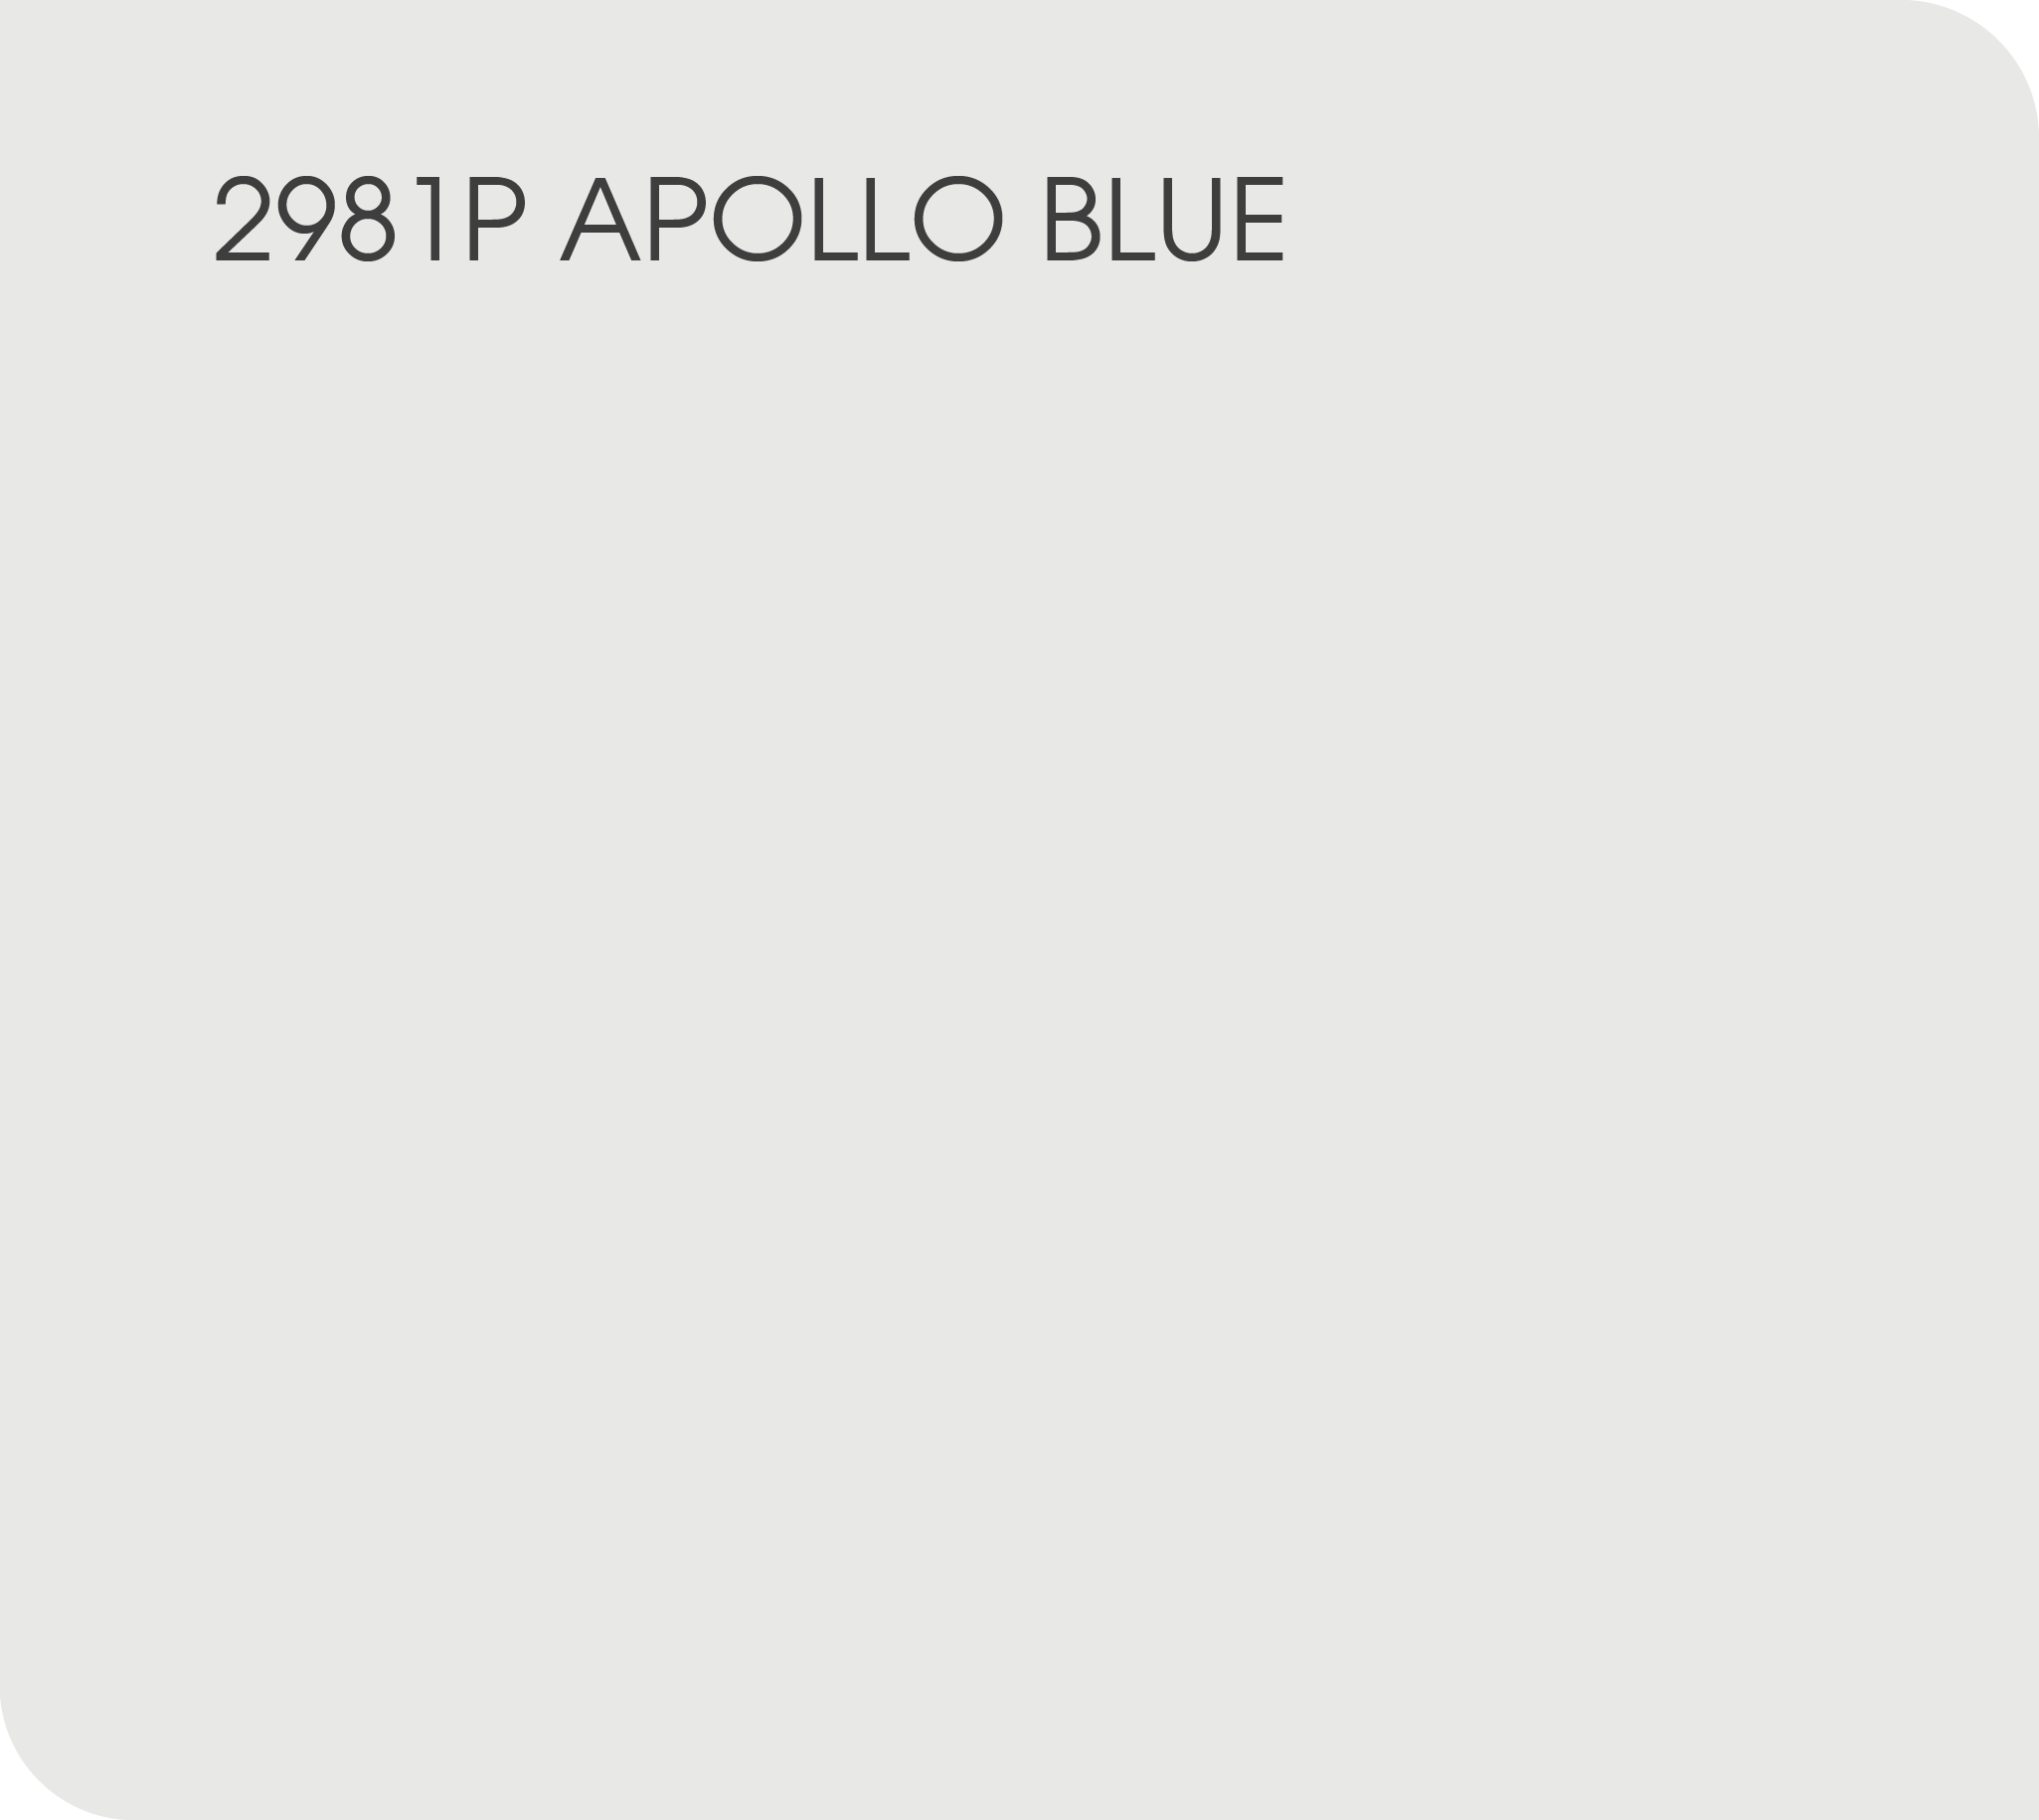 apollo blue 2981D